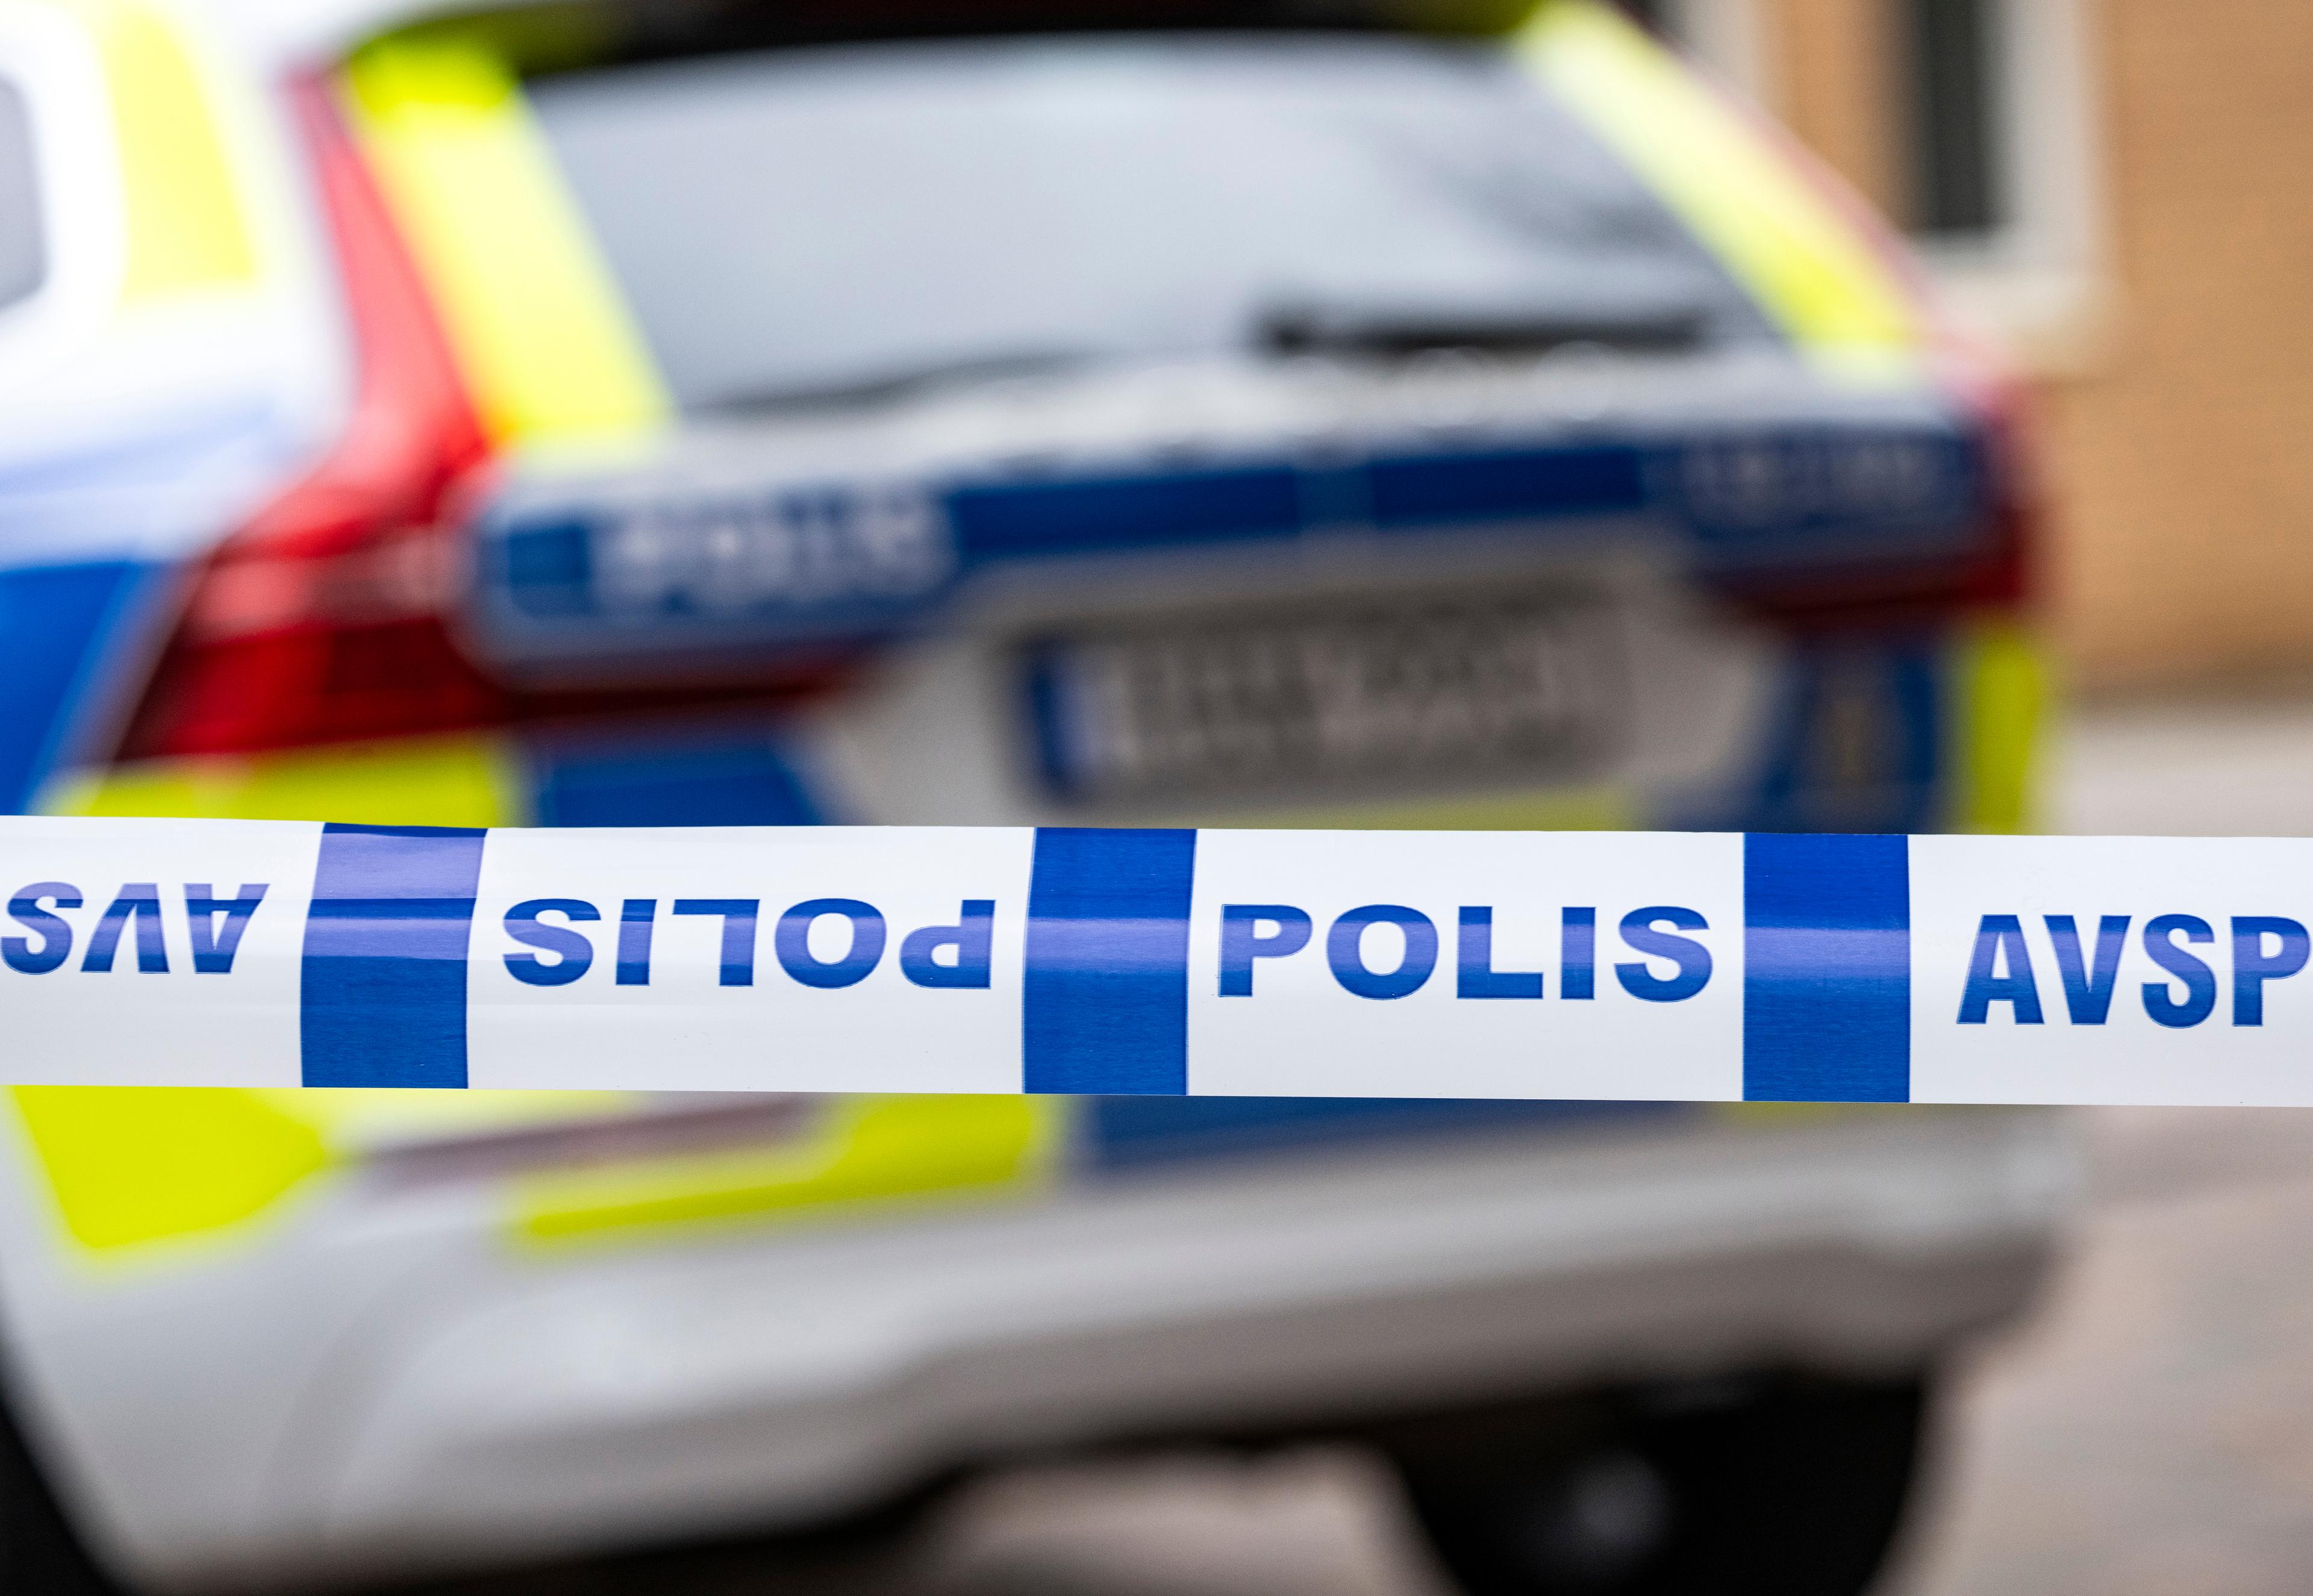 Tågtrafiken i Linköping har stoppats sedan polisen larmats om ett misstänkt farligt föremål. Arkivbild. Foto: Johan Nilsson/TT